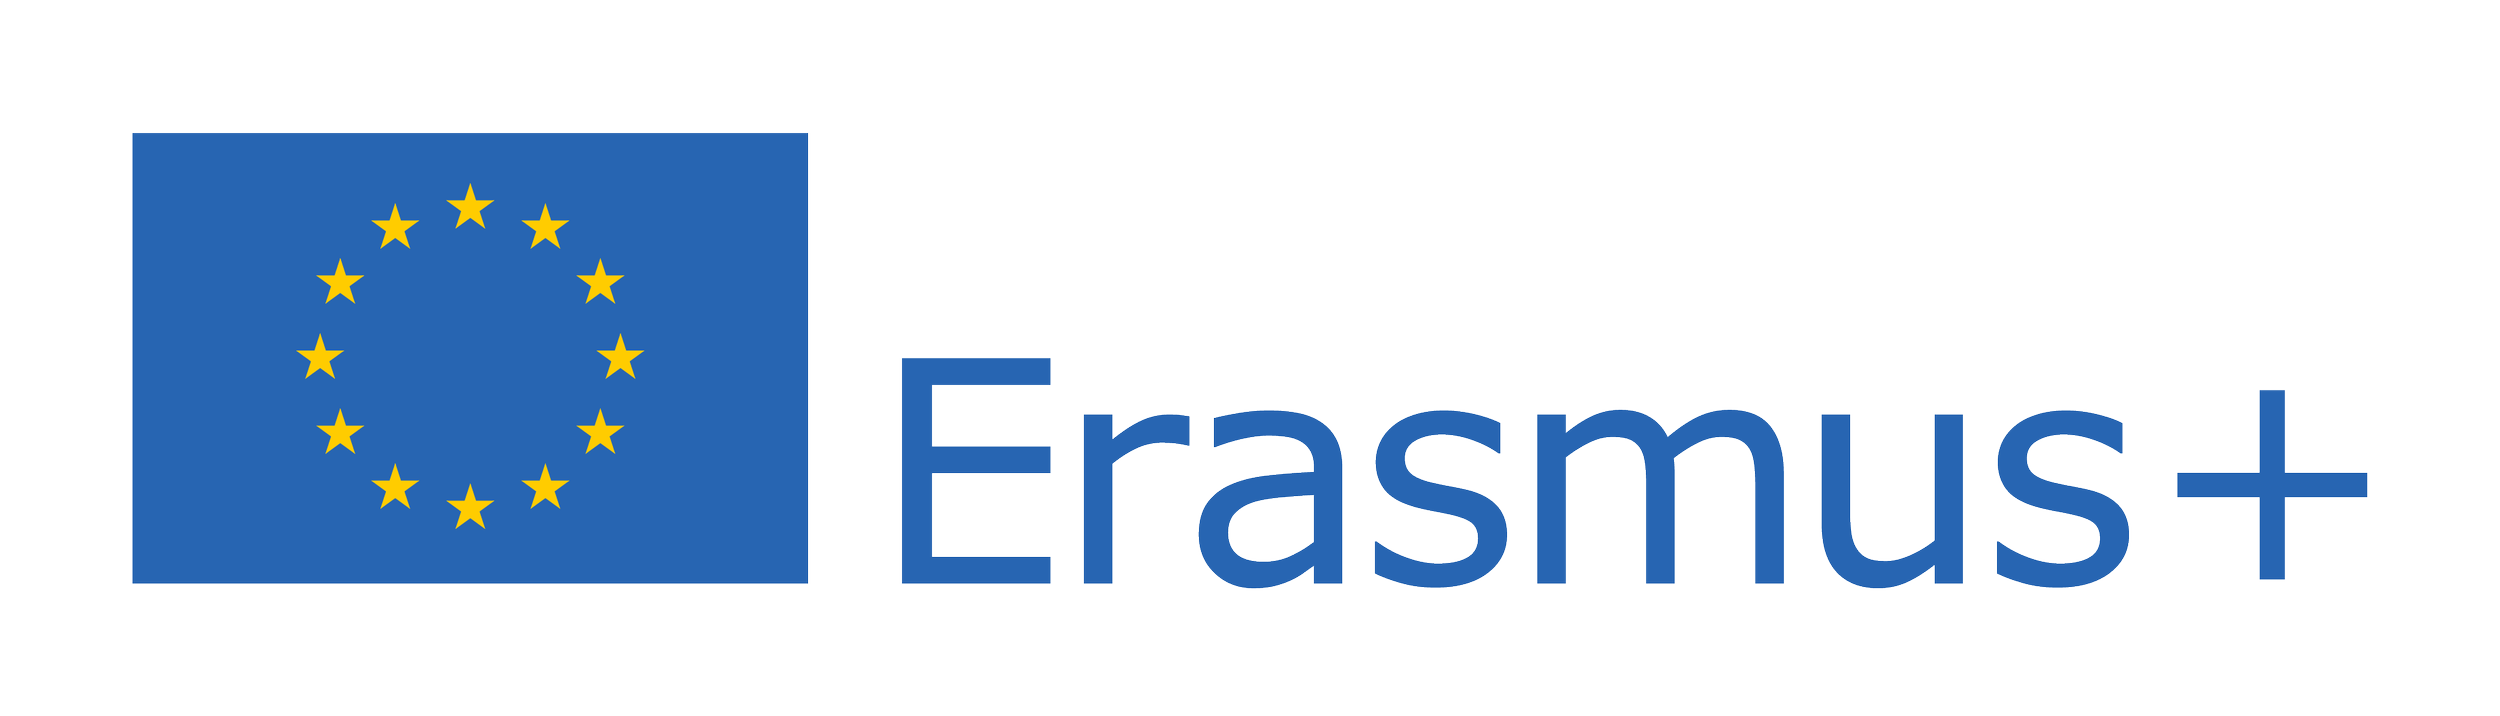 Erasmus+_Logo.png